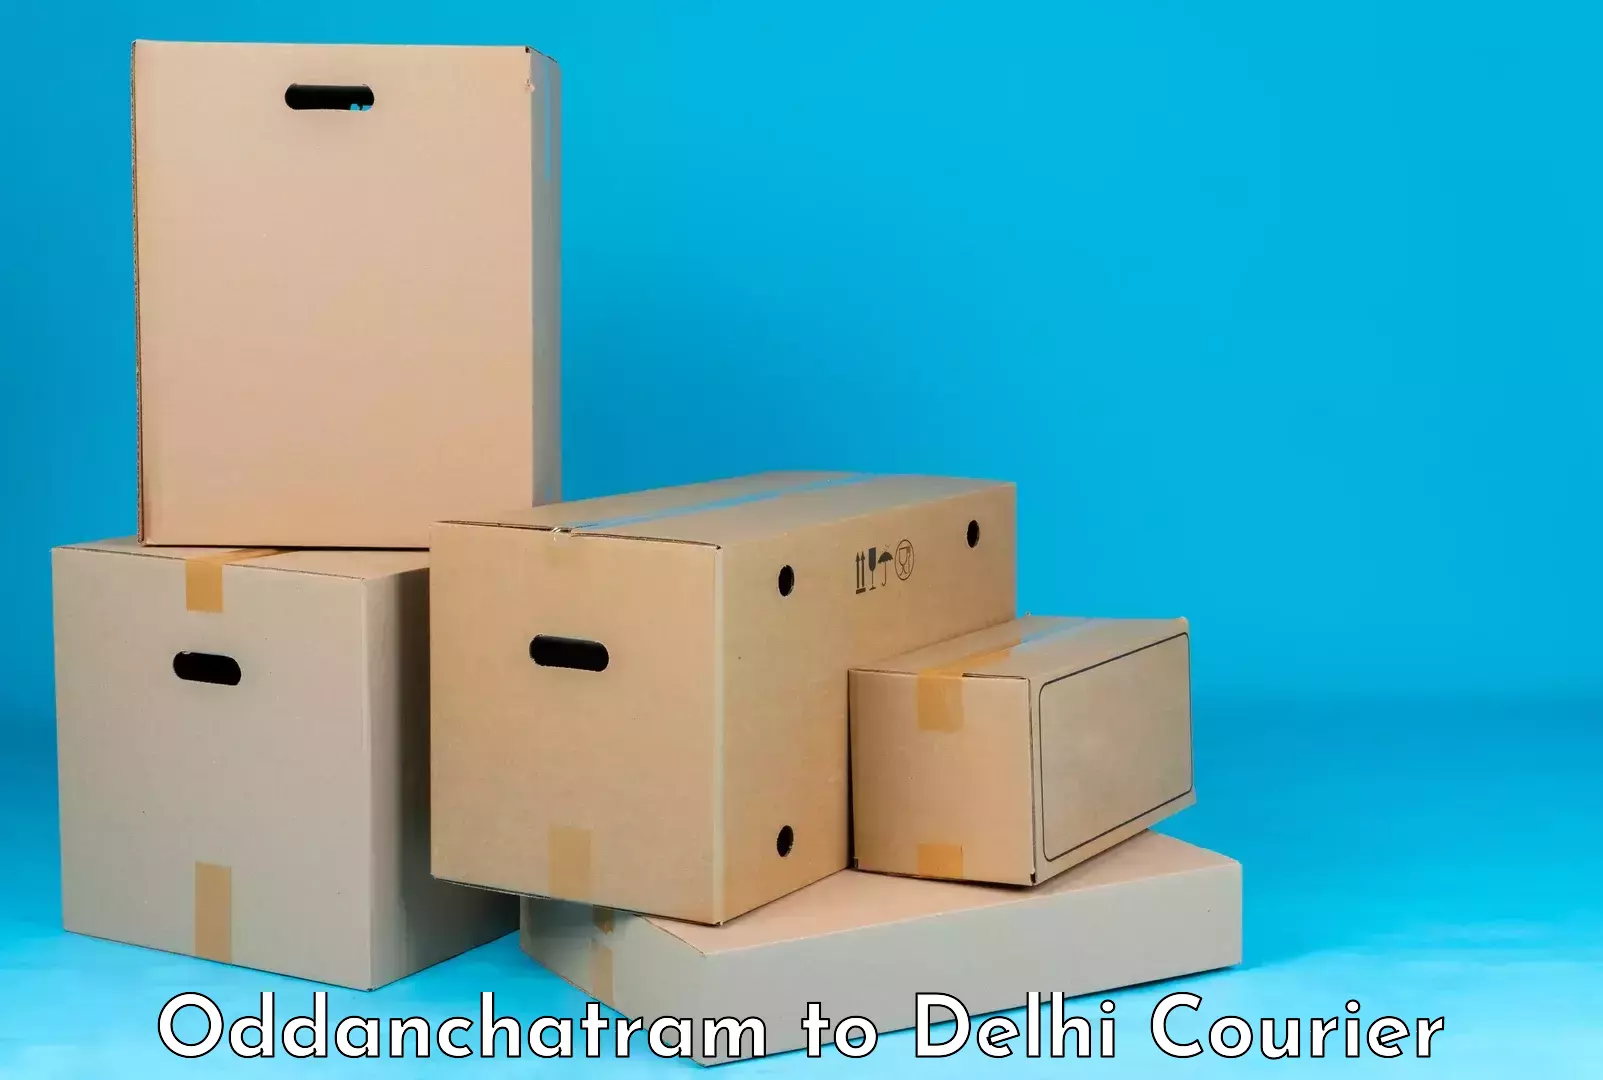 Regional luggage transport Oddanchatram to NIT Delhi